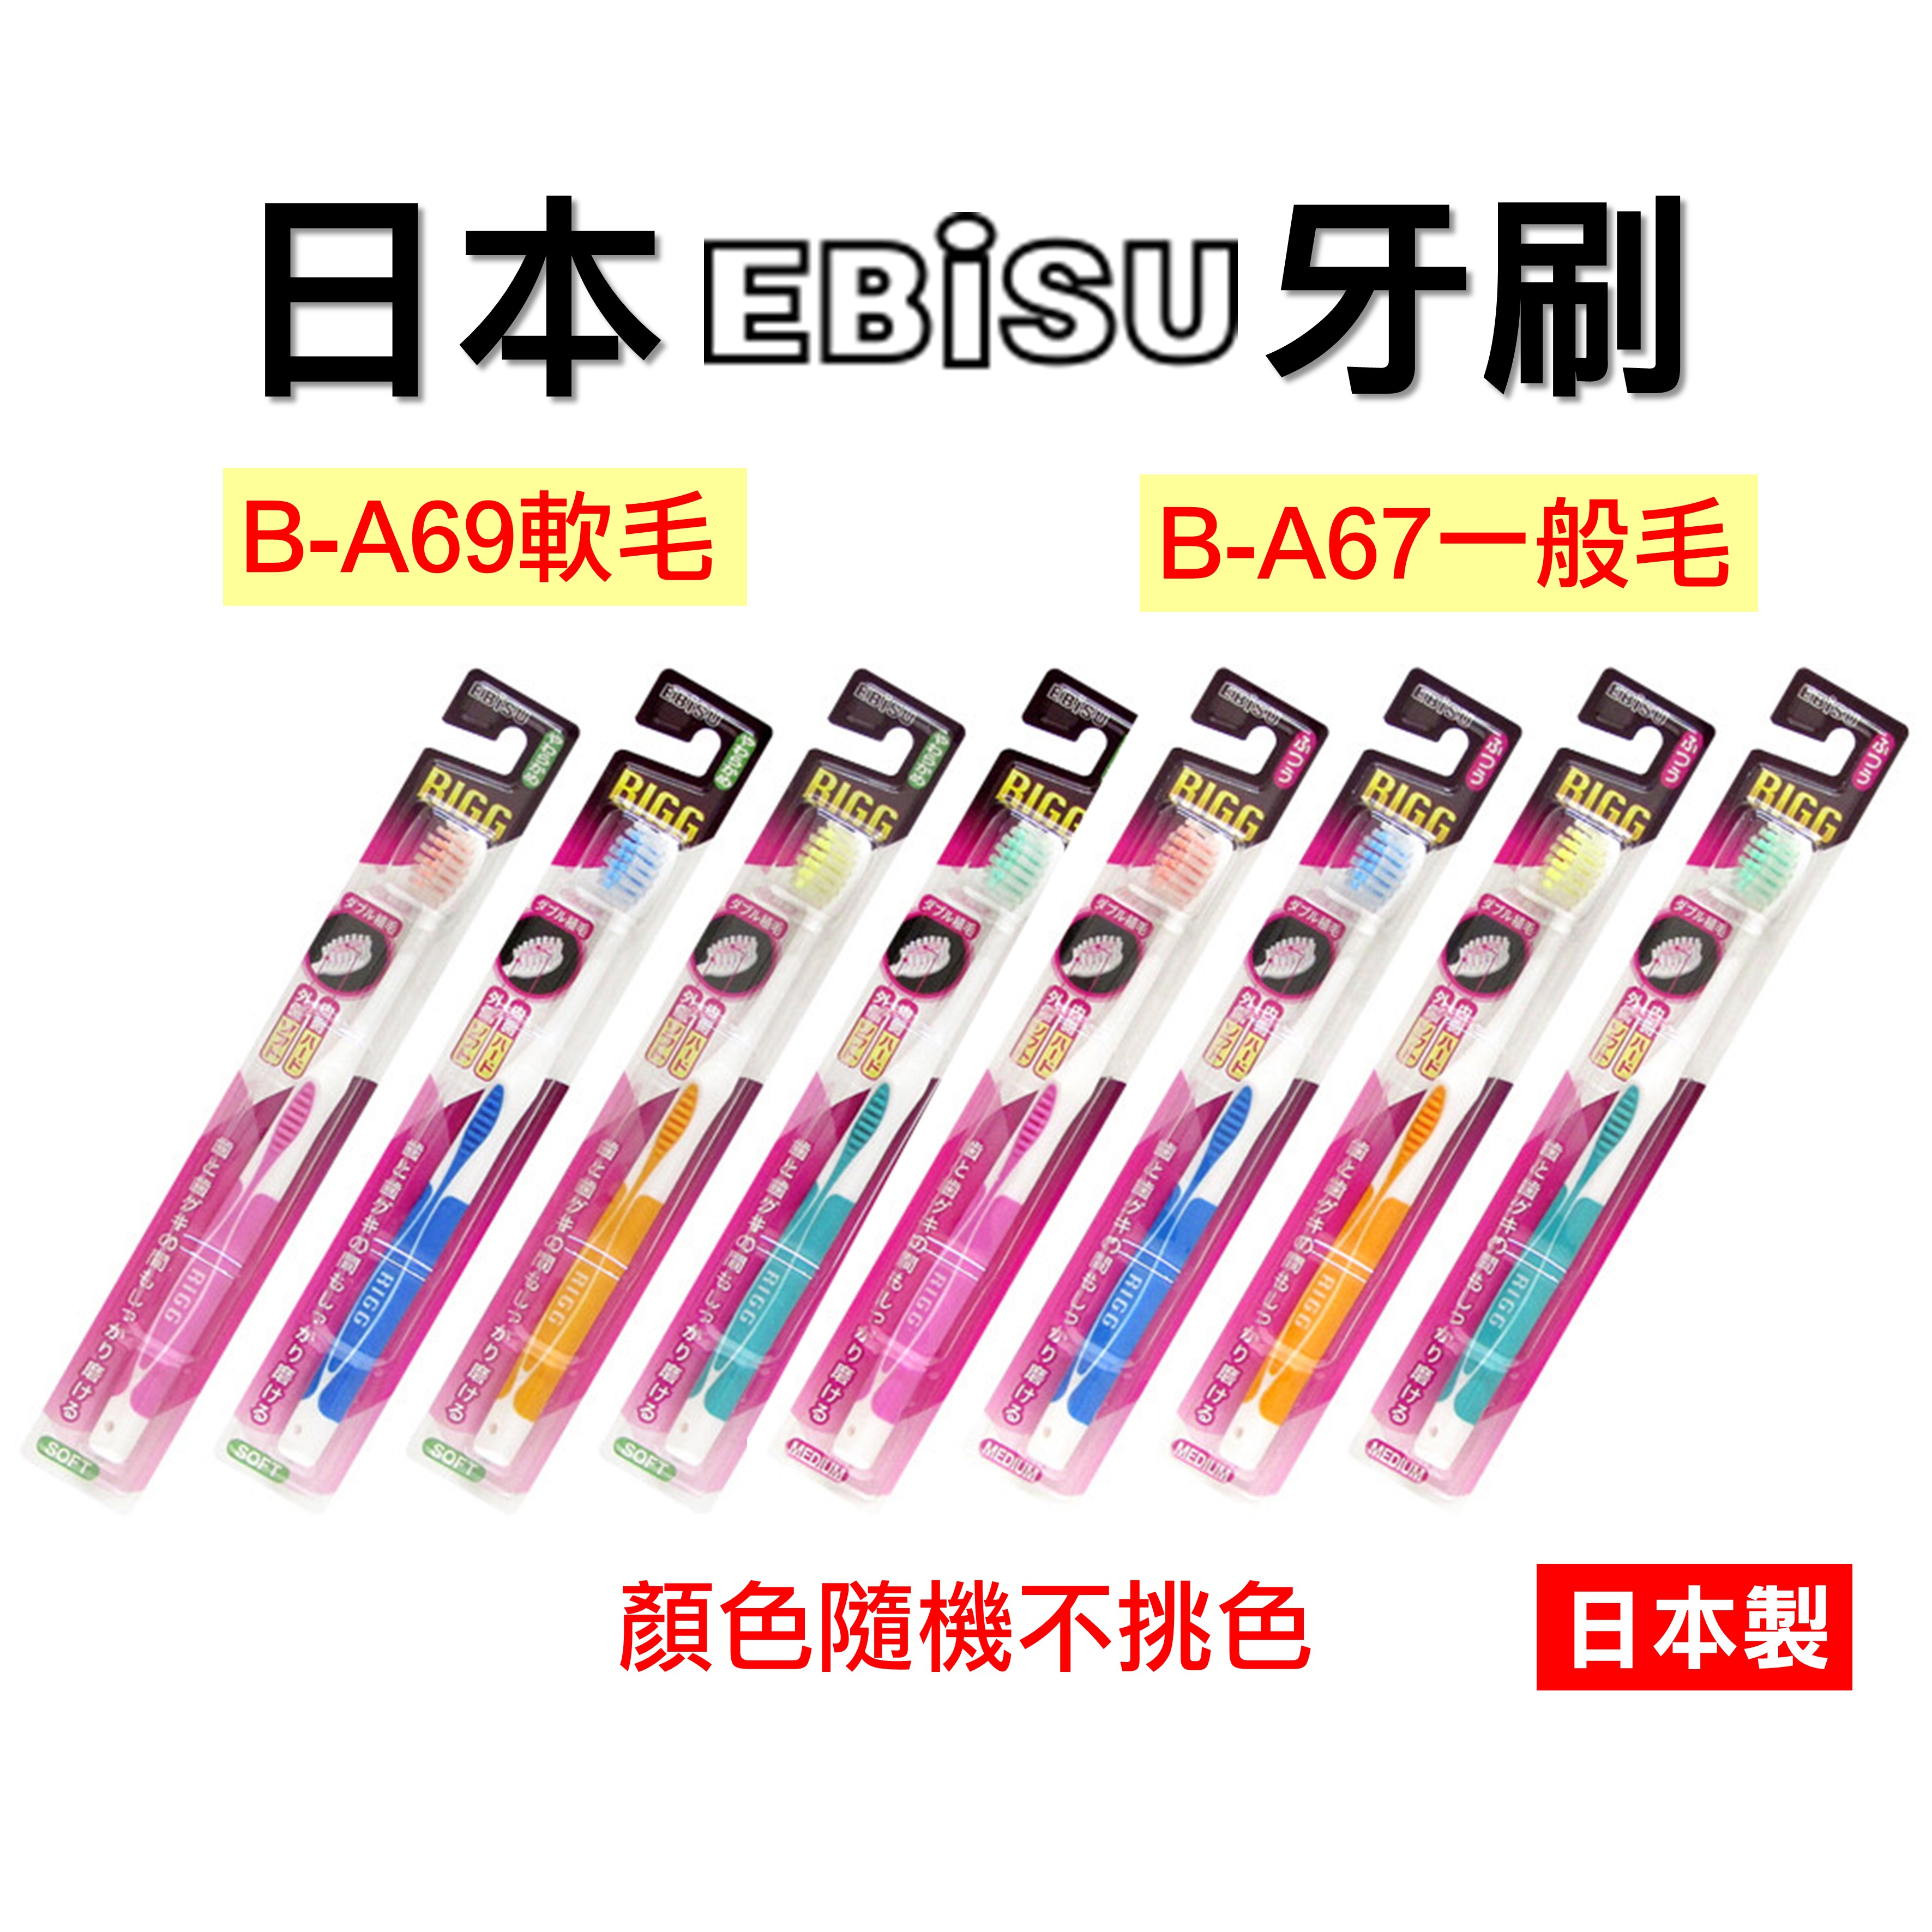 日本 EBiSU 惠百施 牙刷 健齒良策雙層刷毛 惠比壽牙刷 軟毛/ B-A69 一般毛/ B-A67